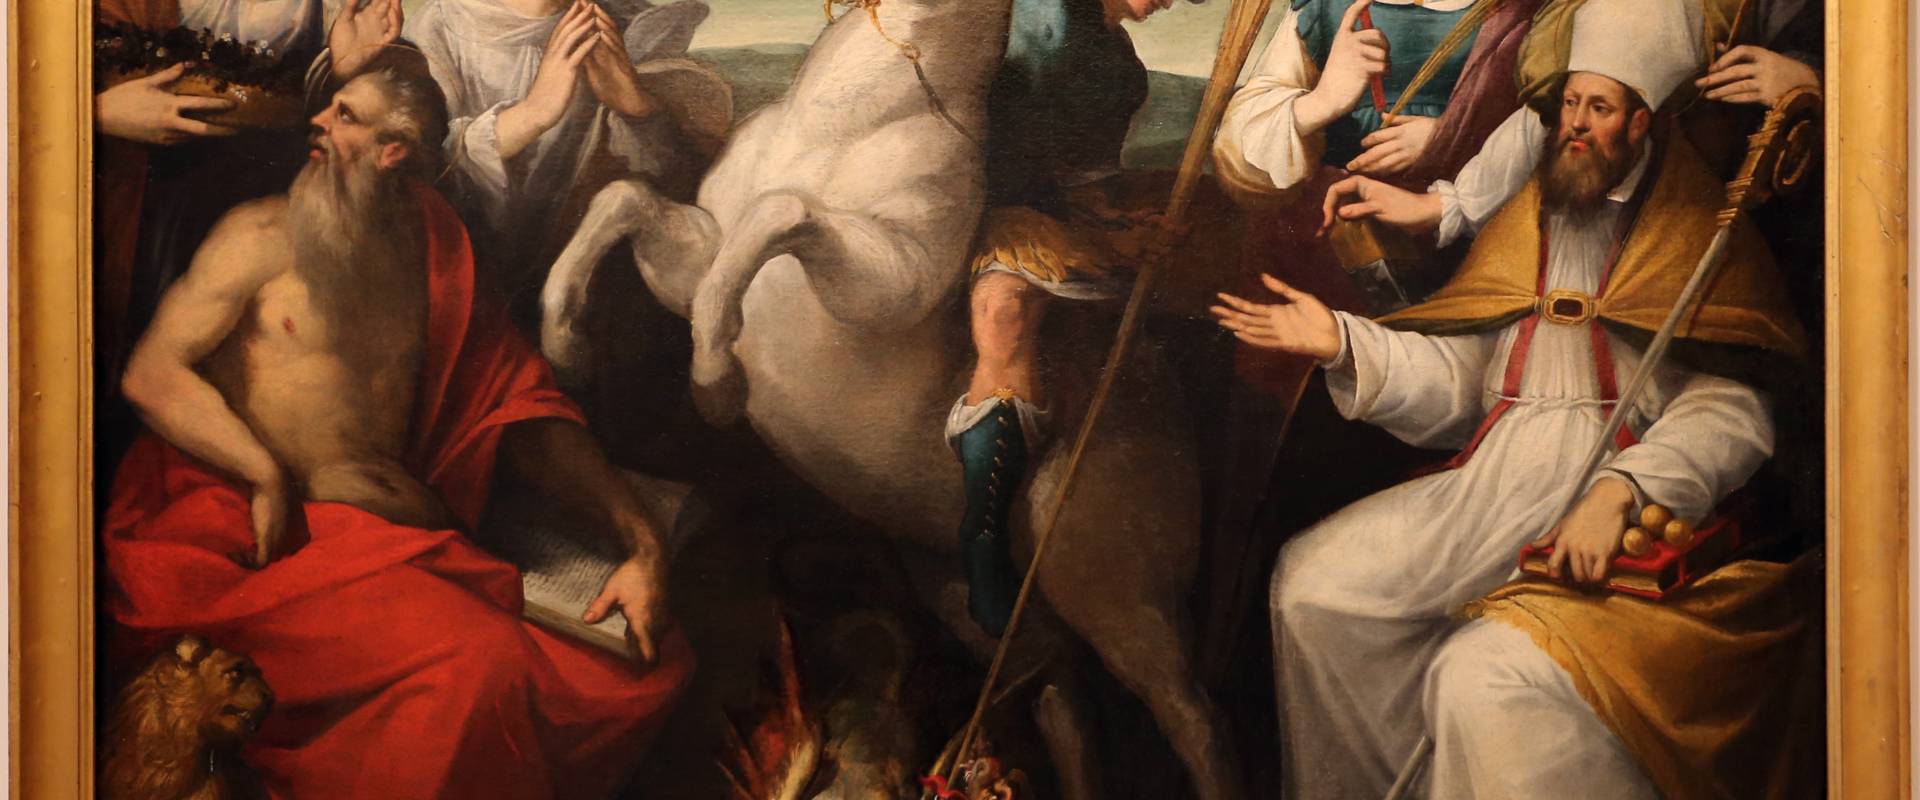 Tiburzio passerotti, san giorgio uccide il drago e altri santi, 1575-1600 ca photo by Sailko